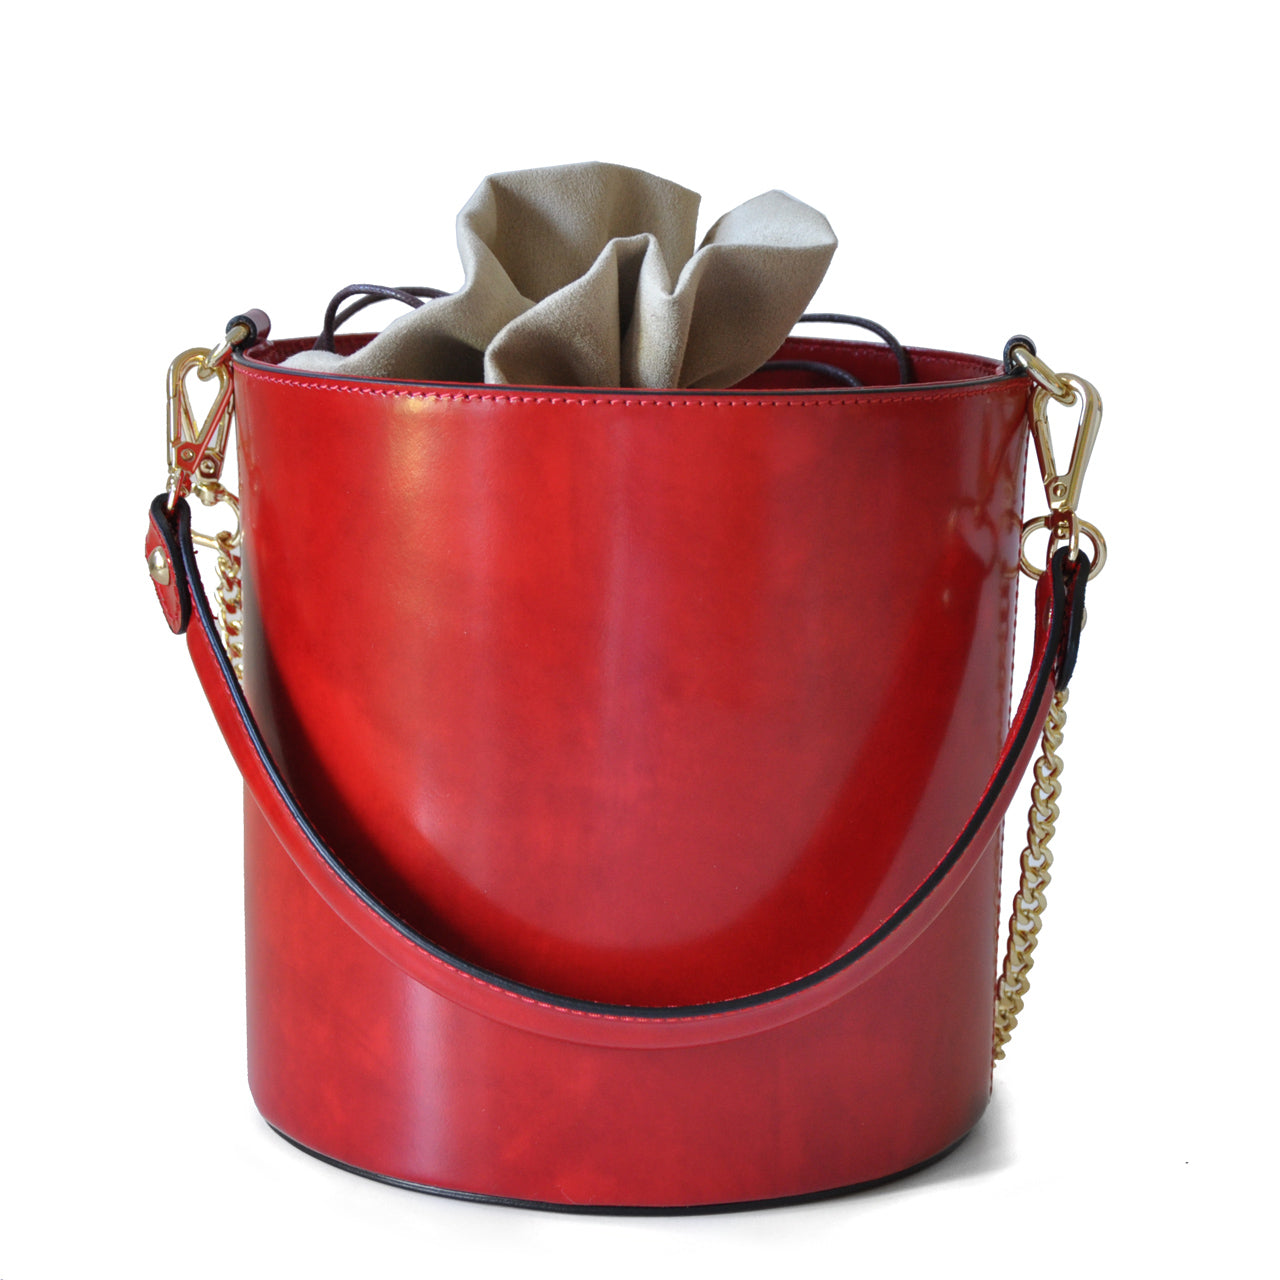 Pratesi Bag Secchiello R335 in genuine Italian leather